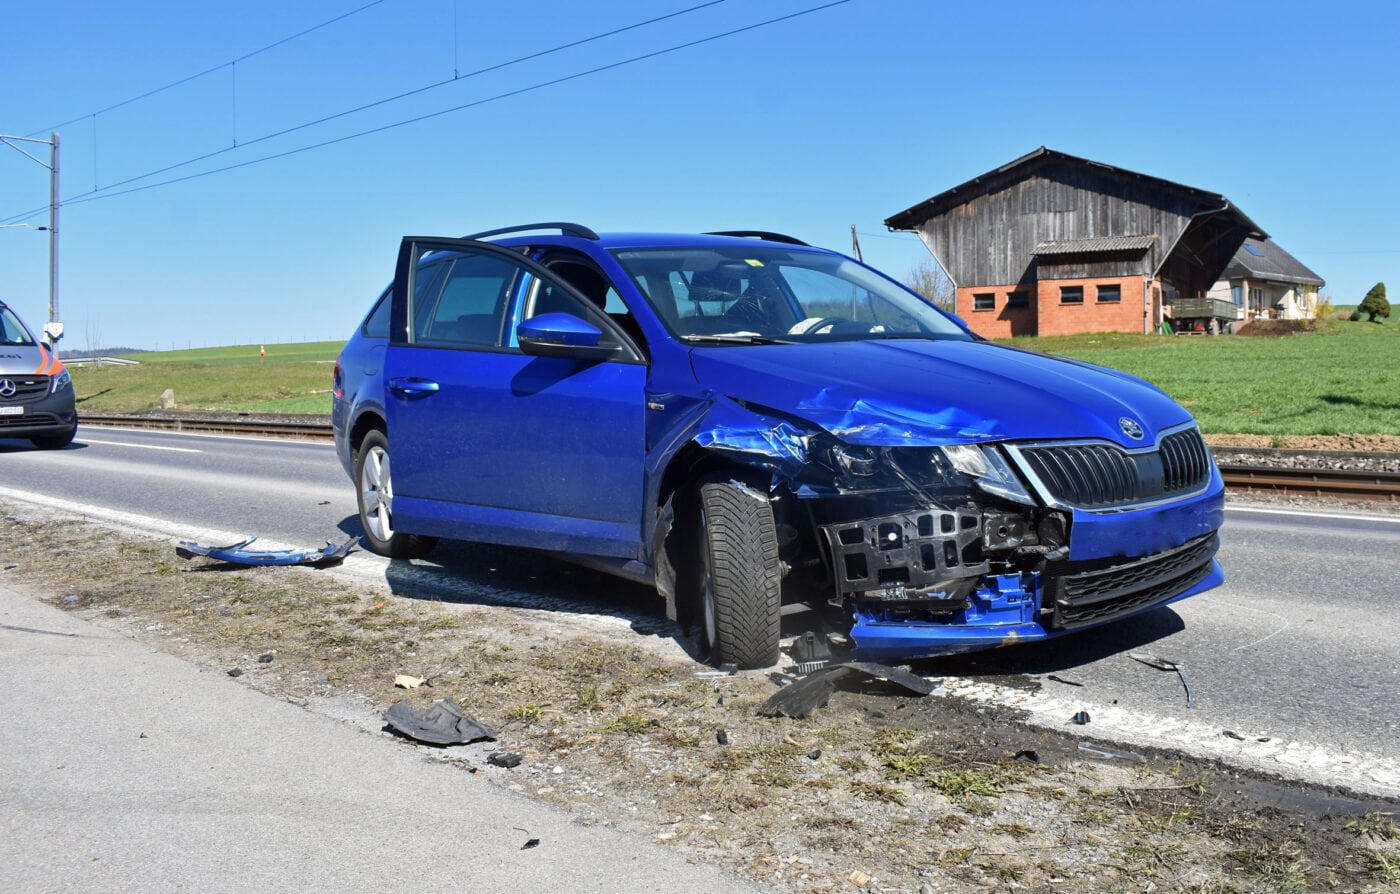 Kollision zwischen zwei Autos – eine Person verletzt